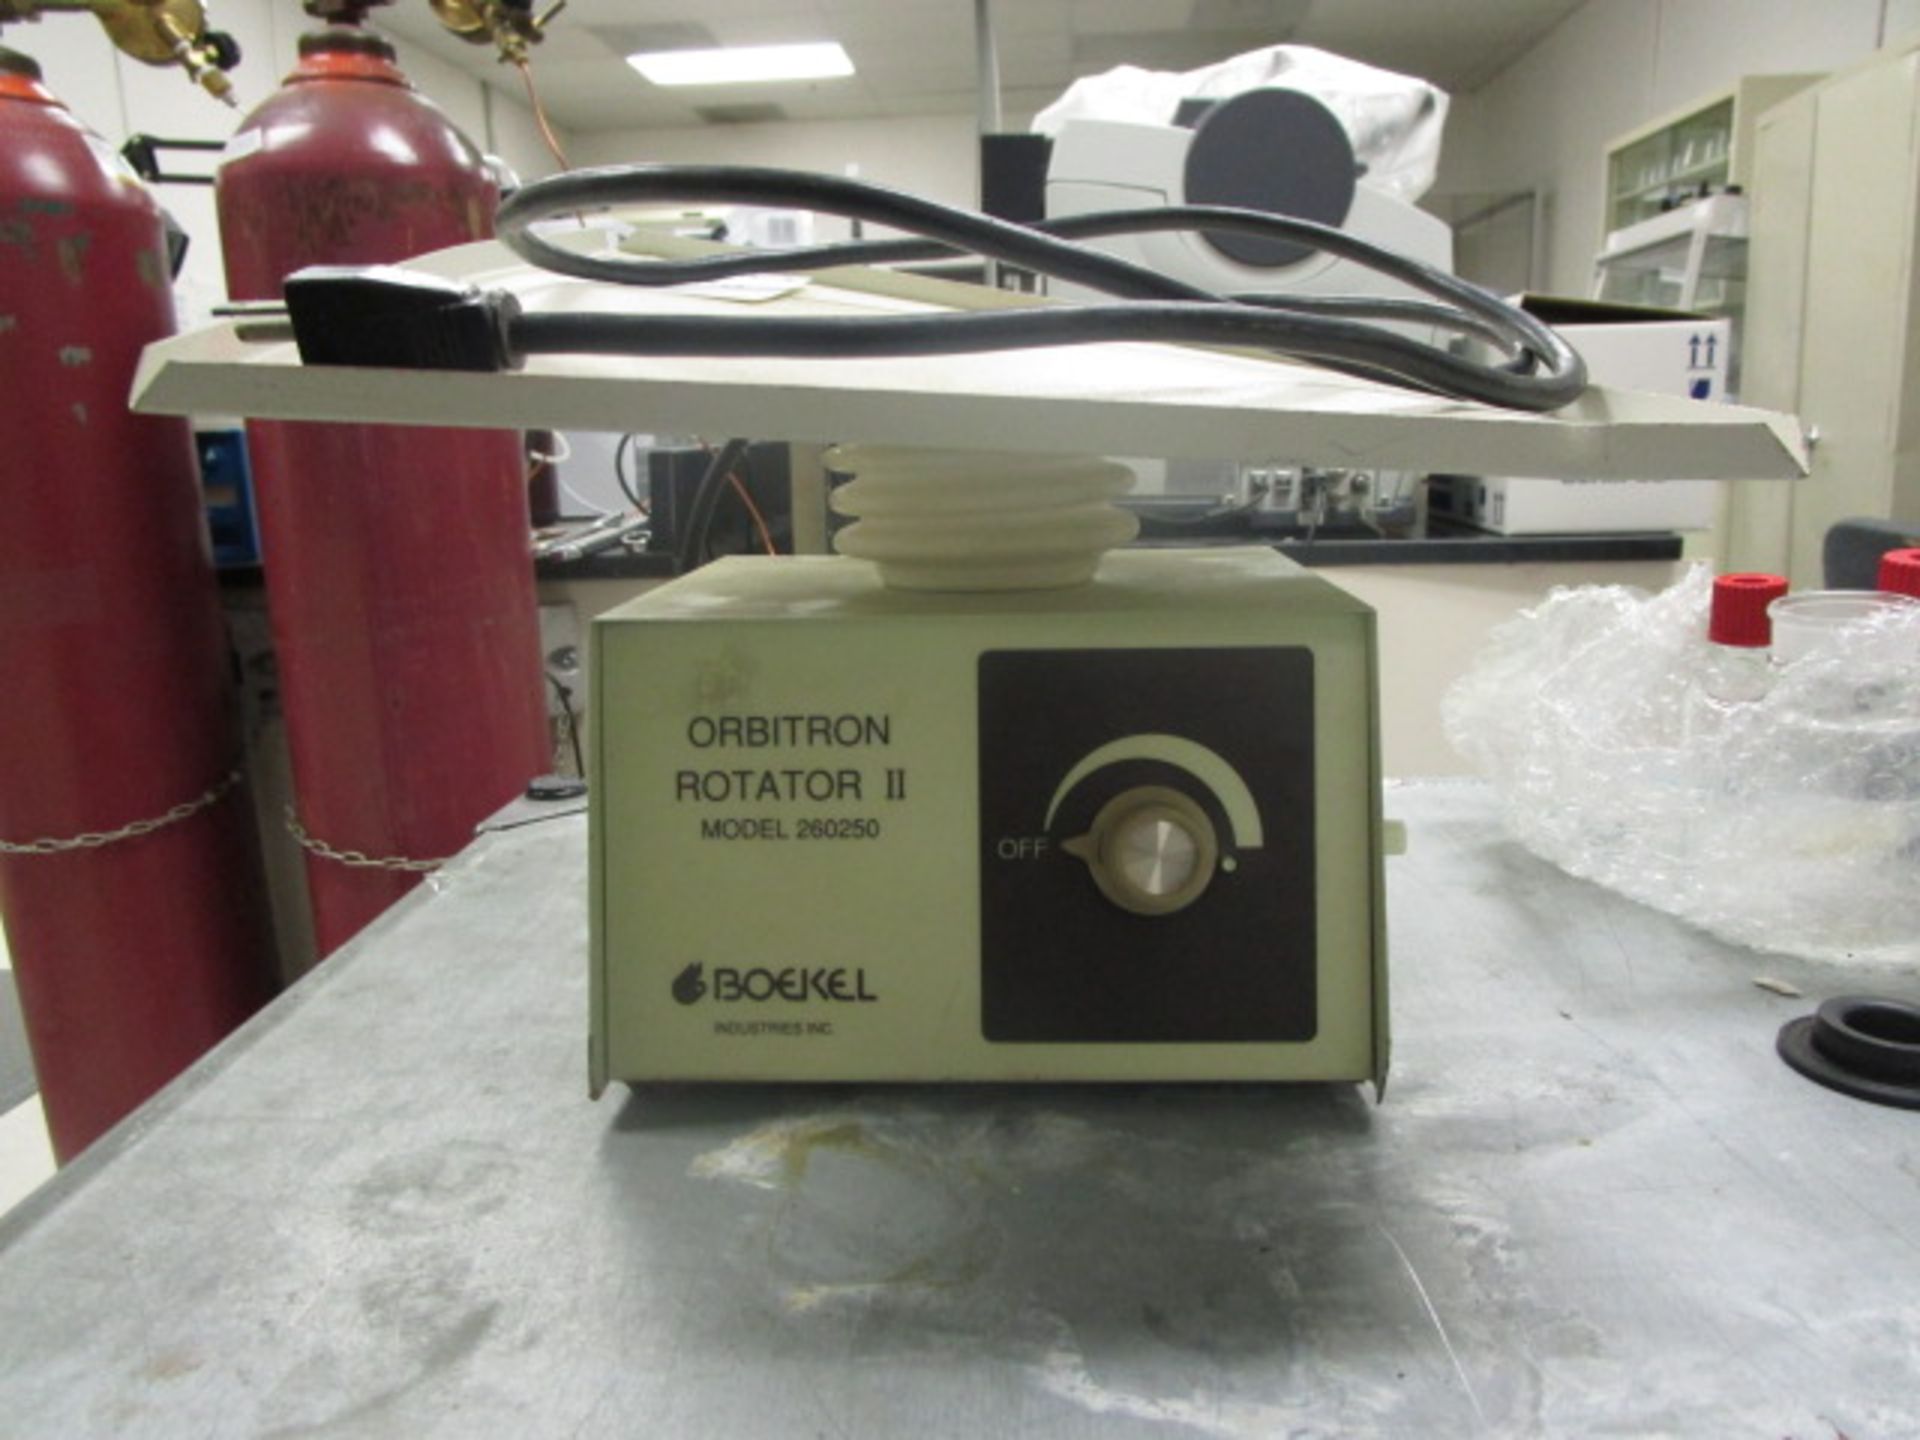 Boekel orbitron rotator II model 260250